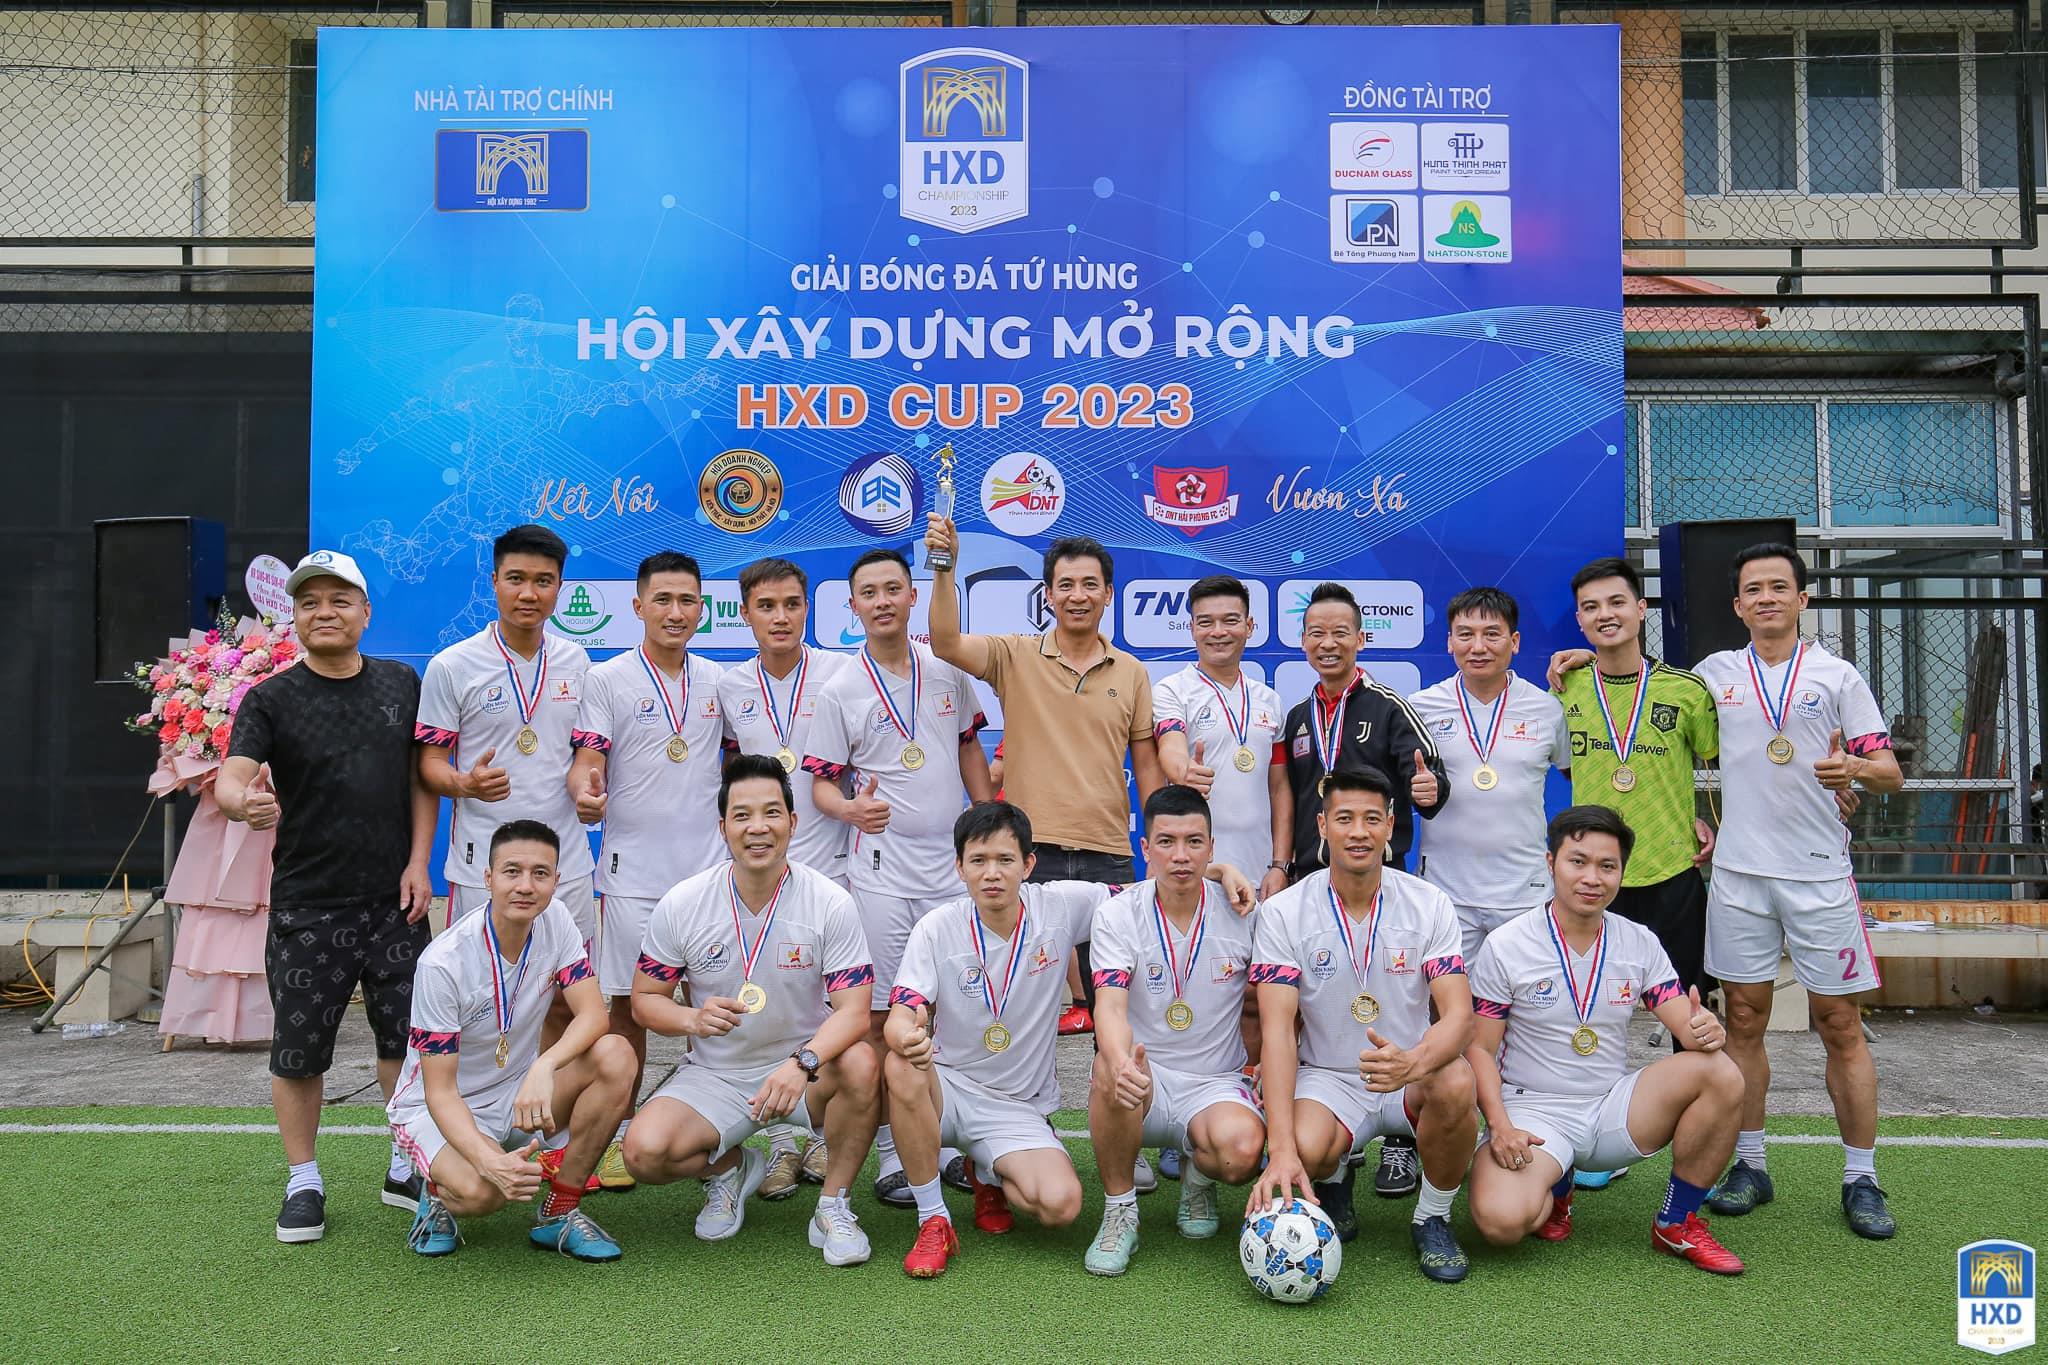 CLB bóng đá Doanh nhân trẻ Hải Phòng Vỗ địch giải bóng đá Tứ Hùng Hội Xây Dựng mở rộng HXD Cup 2023